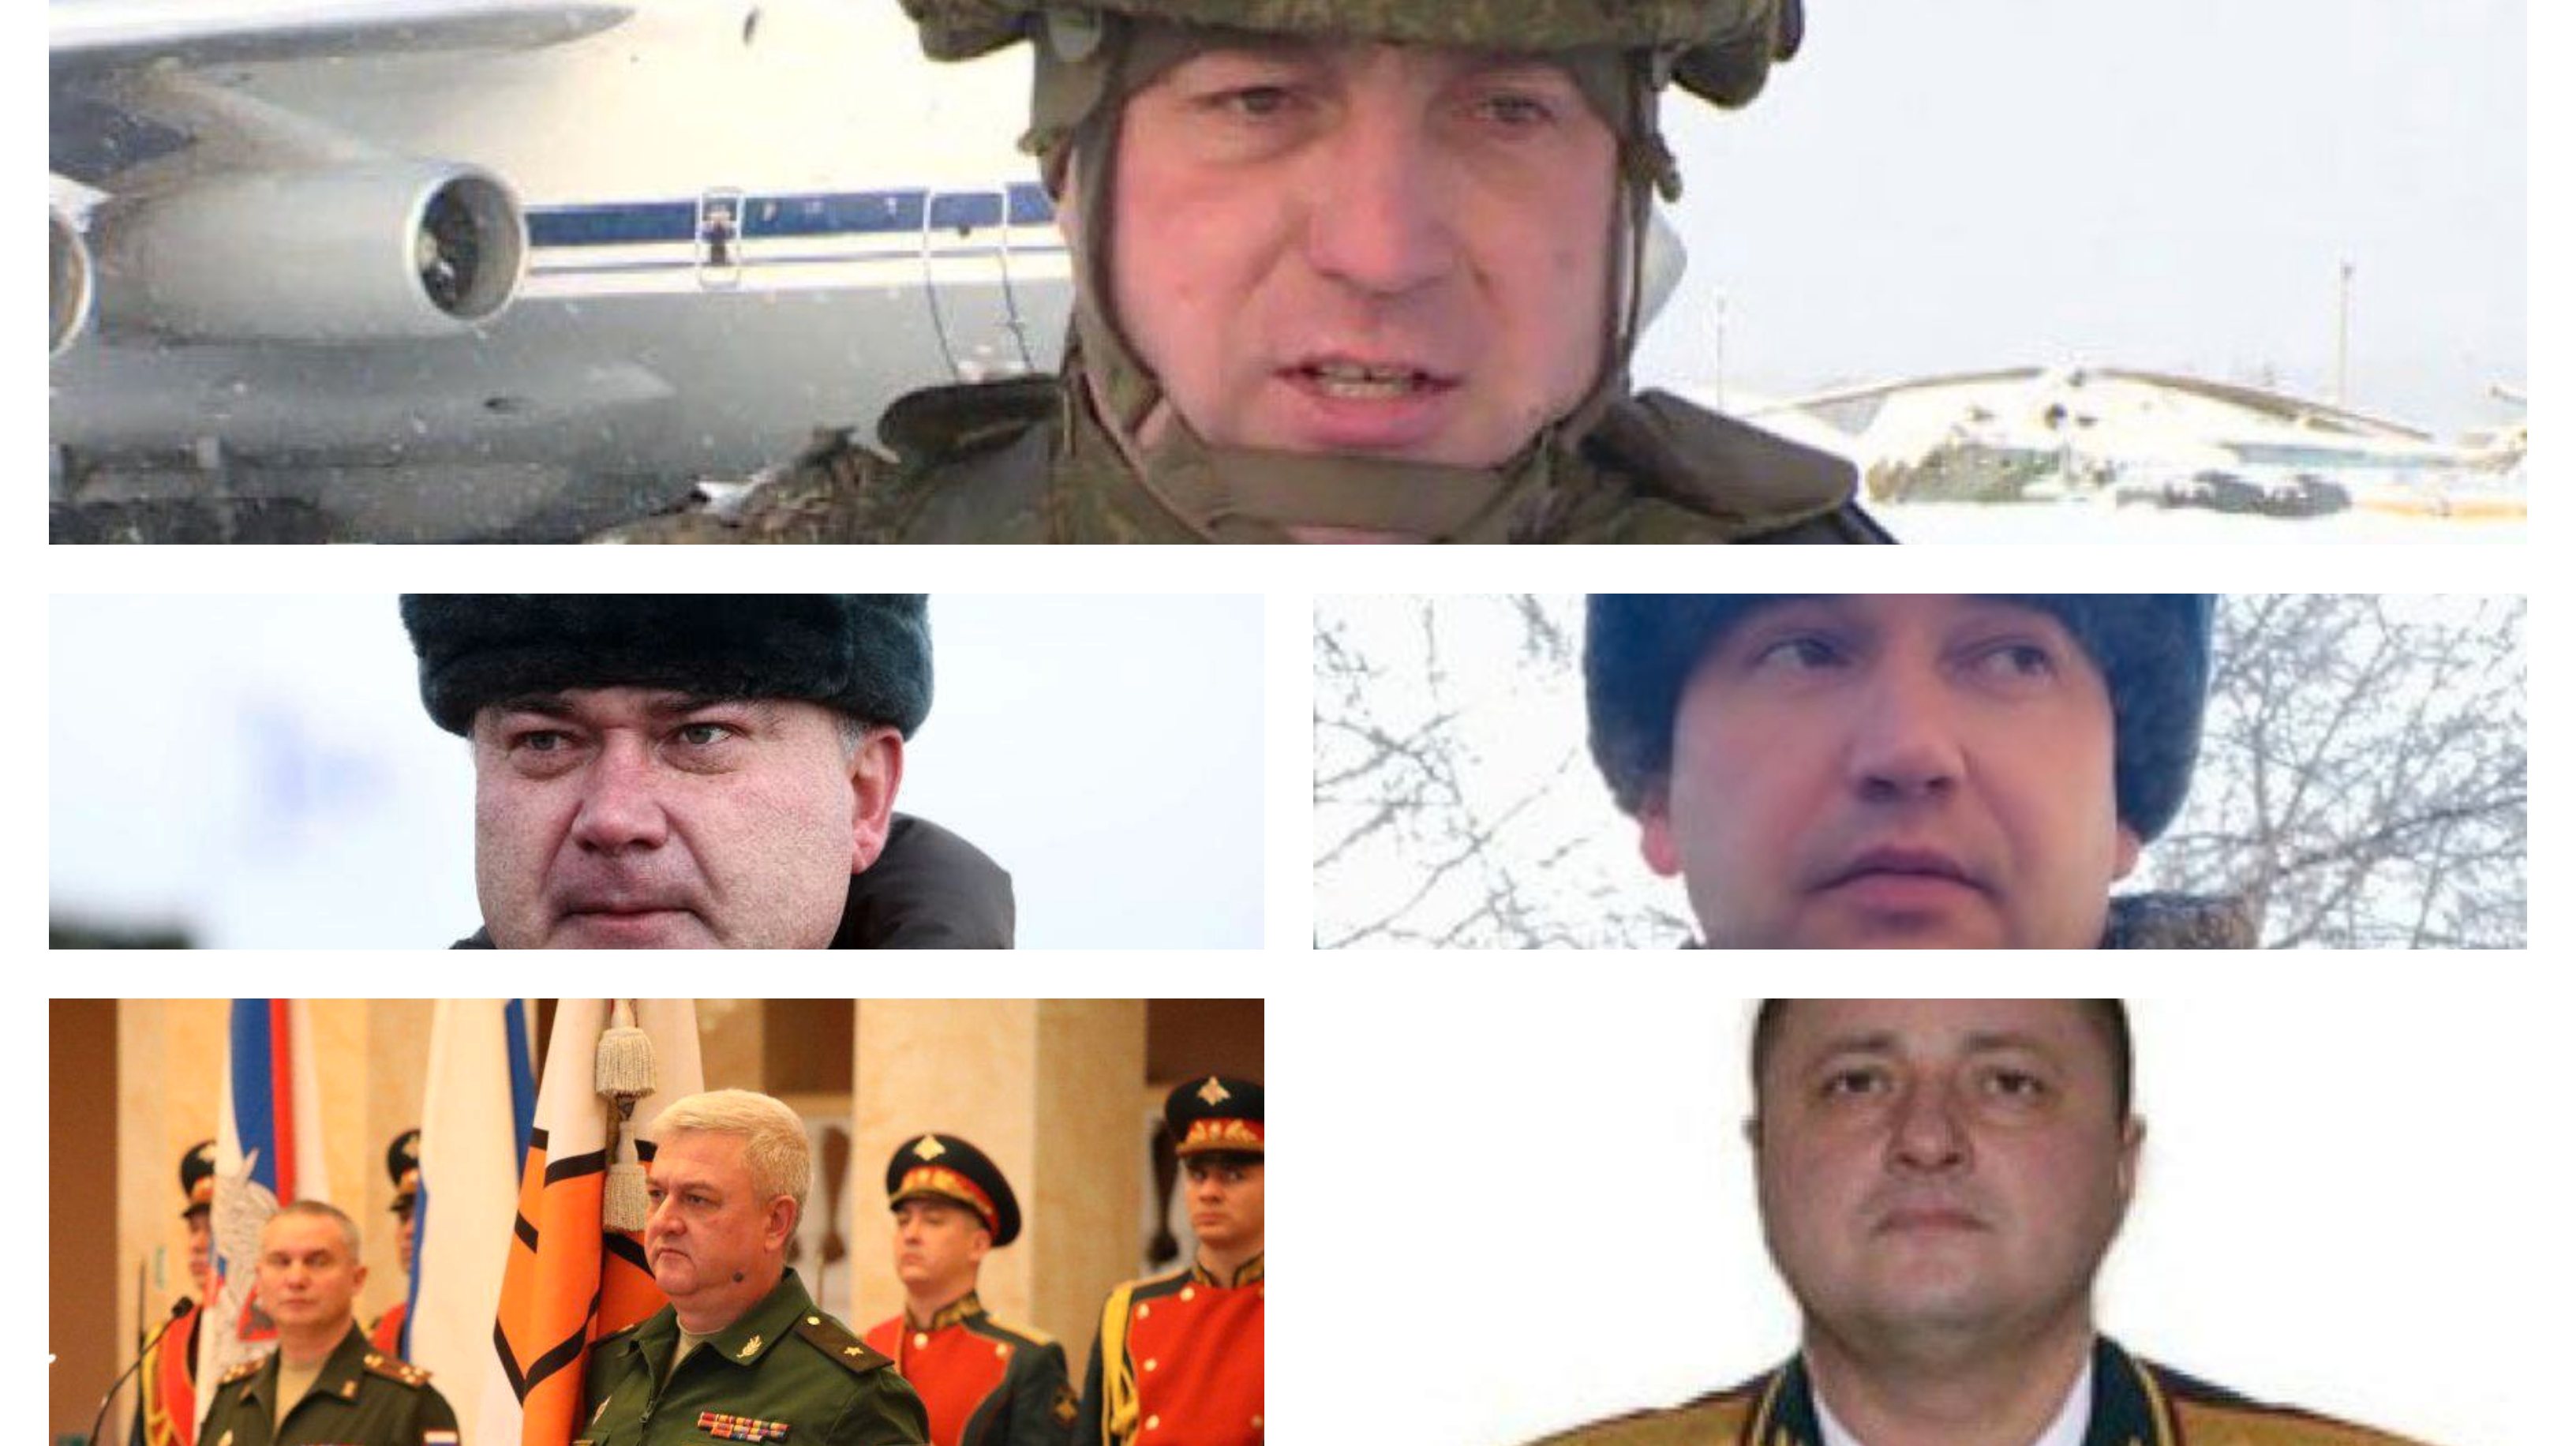 De cima para baixo, da esquerda para a direita: Sergei Sukharev, Andrei Sukhovetsky, Vitaly Gerasimov, Andrei Kolesnikov e Oleg Mityaev